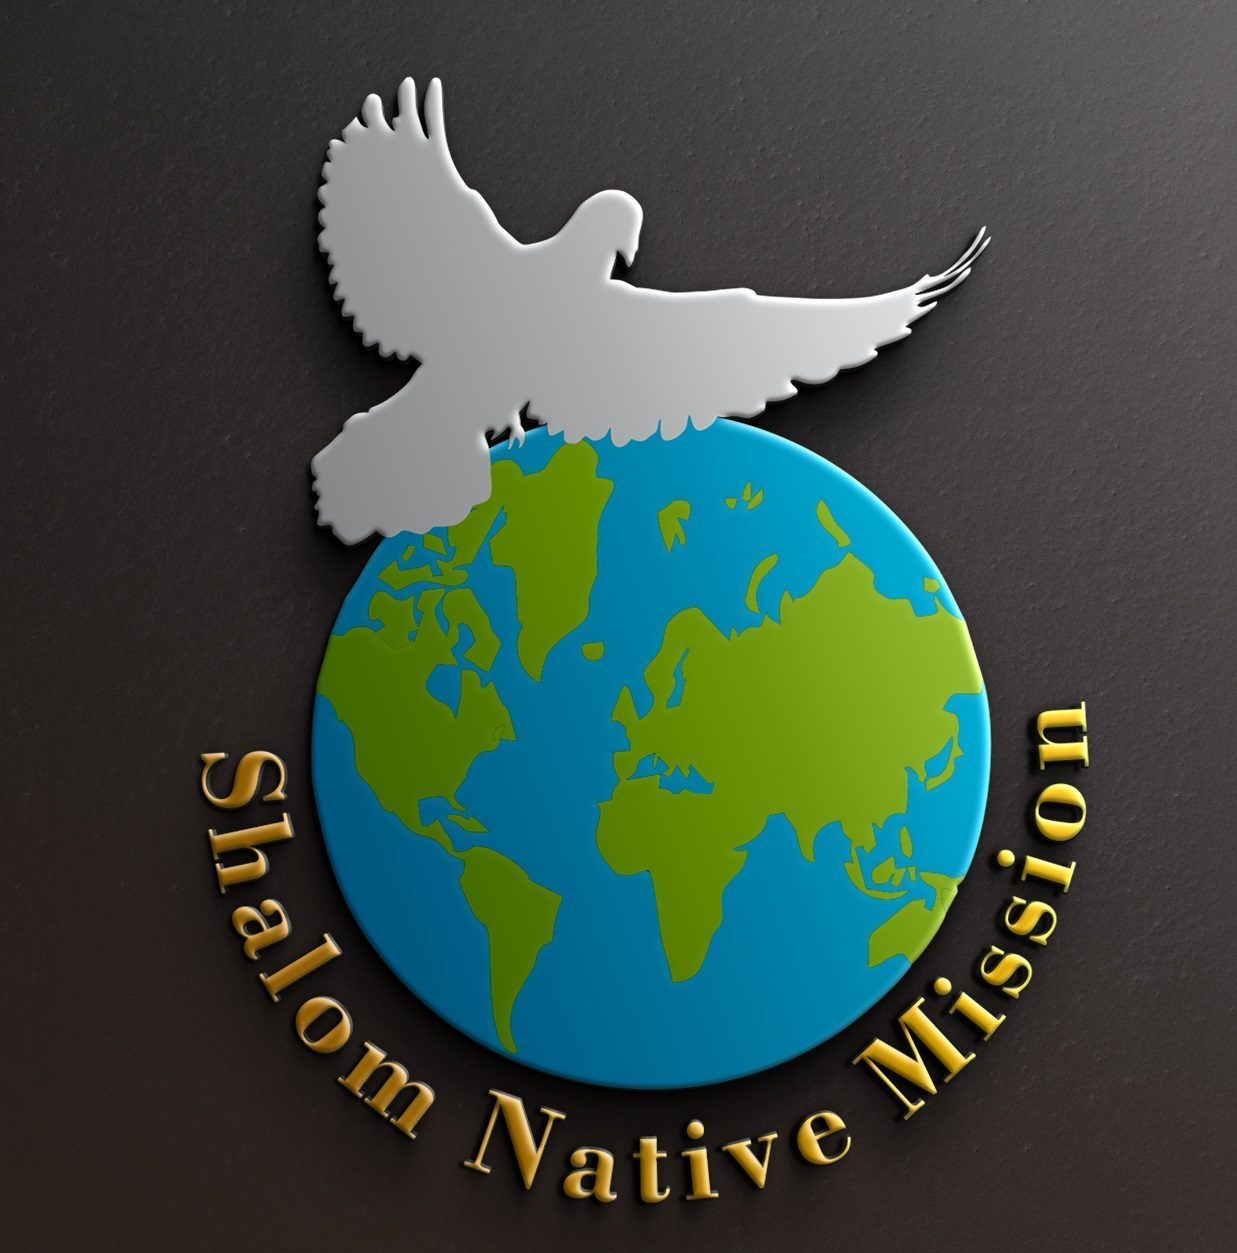 Shalom Native Mission